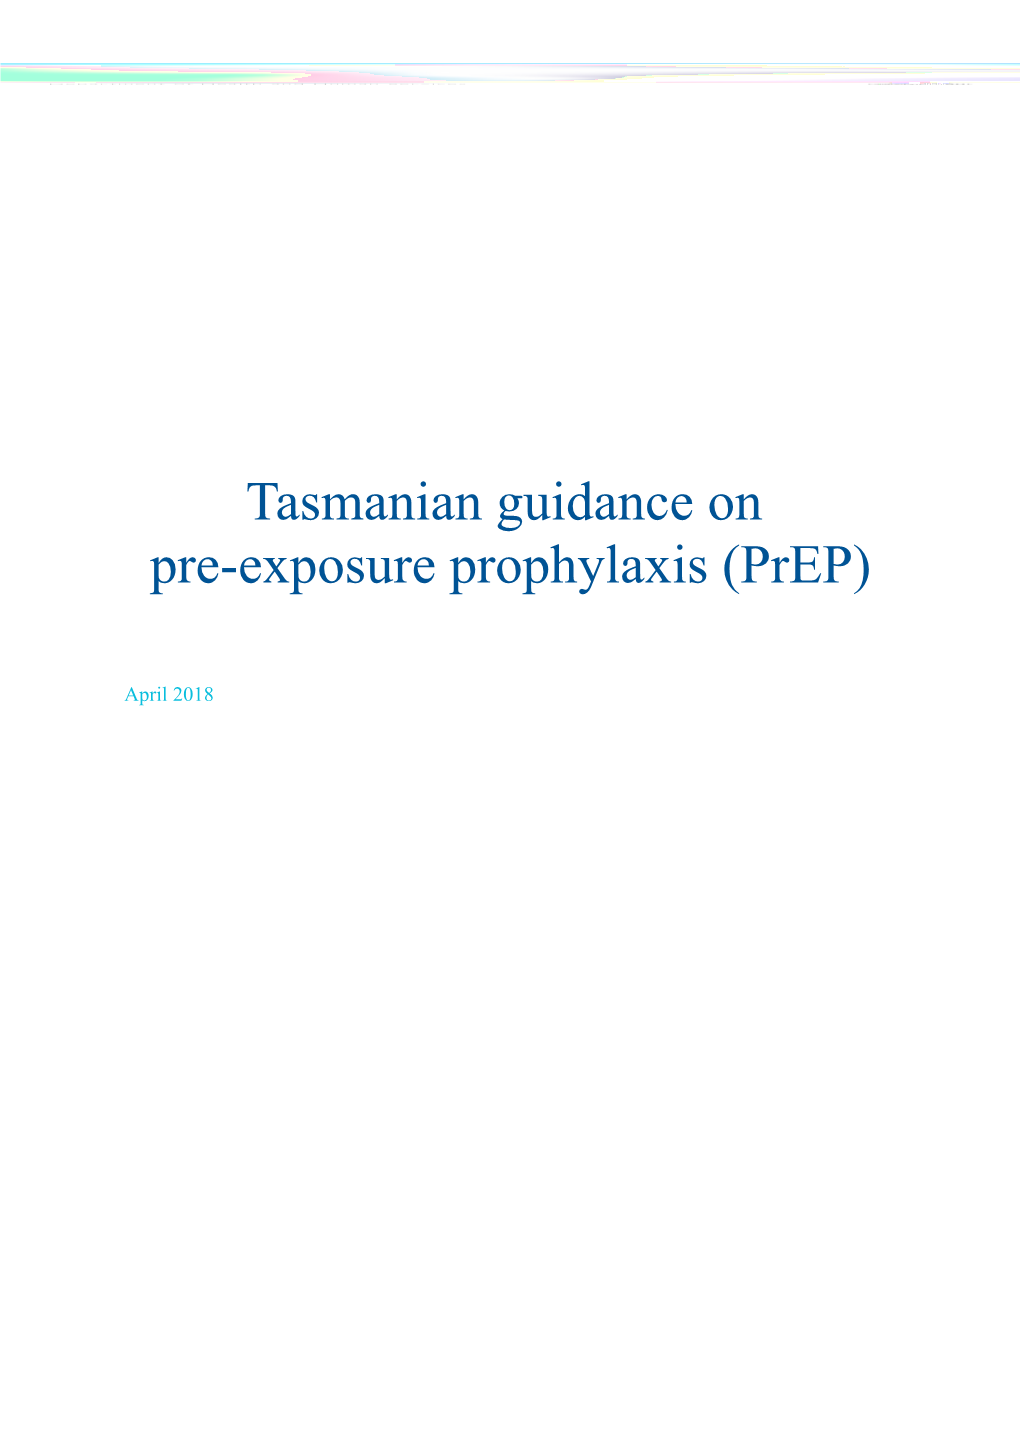 Tasmanian Guidance on Pre-Exposure Prophylaxis (Prep)